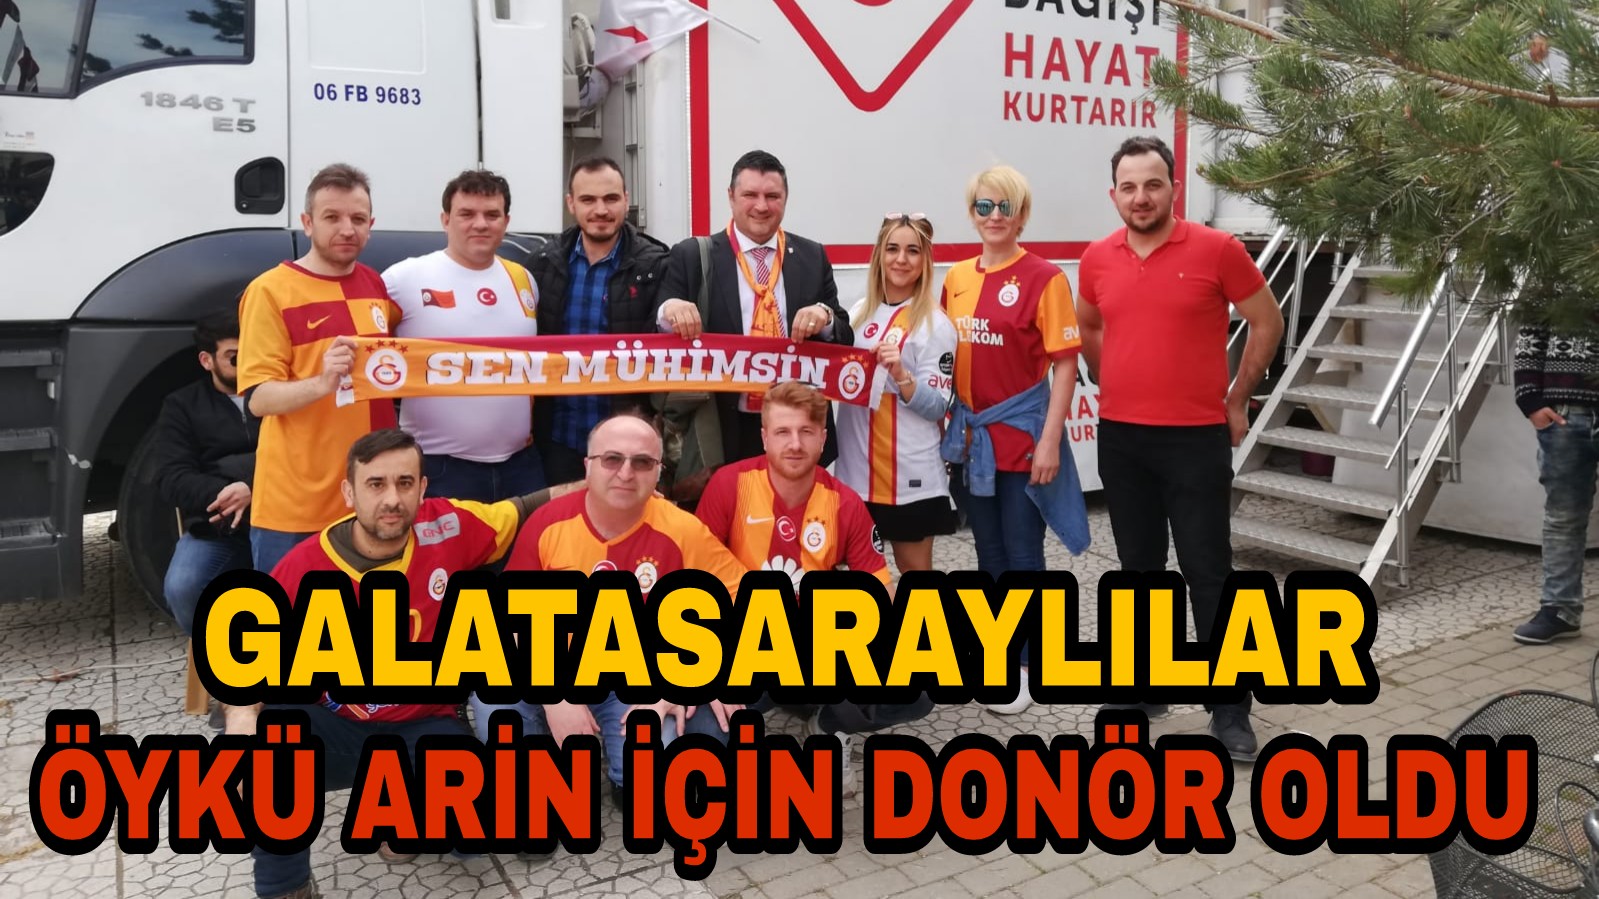 Galatasaraylı Taraftarlar Öykü Arin İçin Donör Oldu